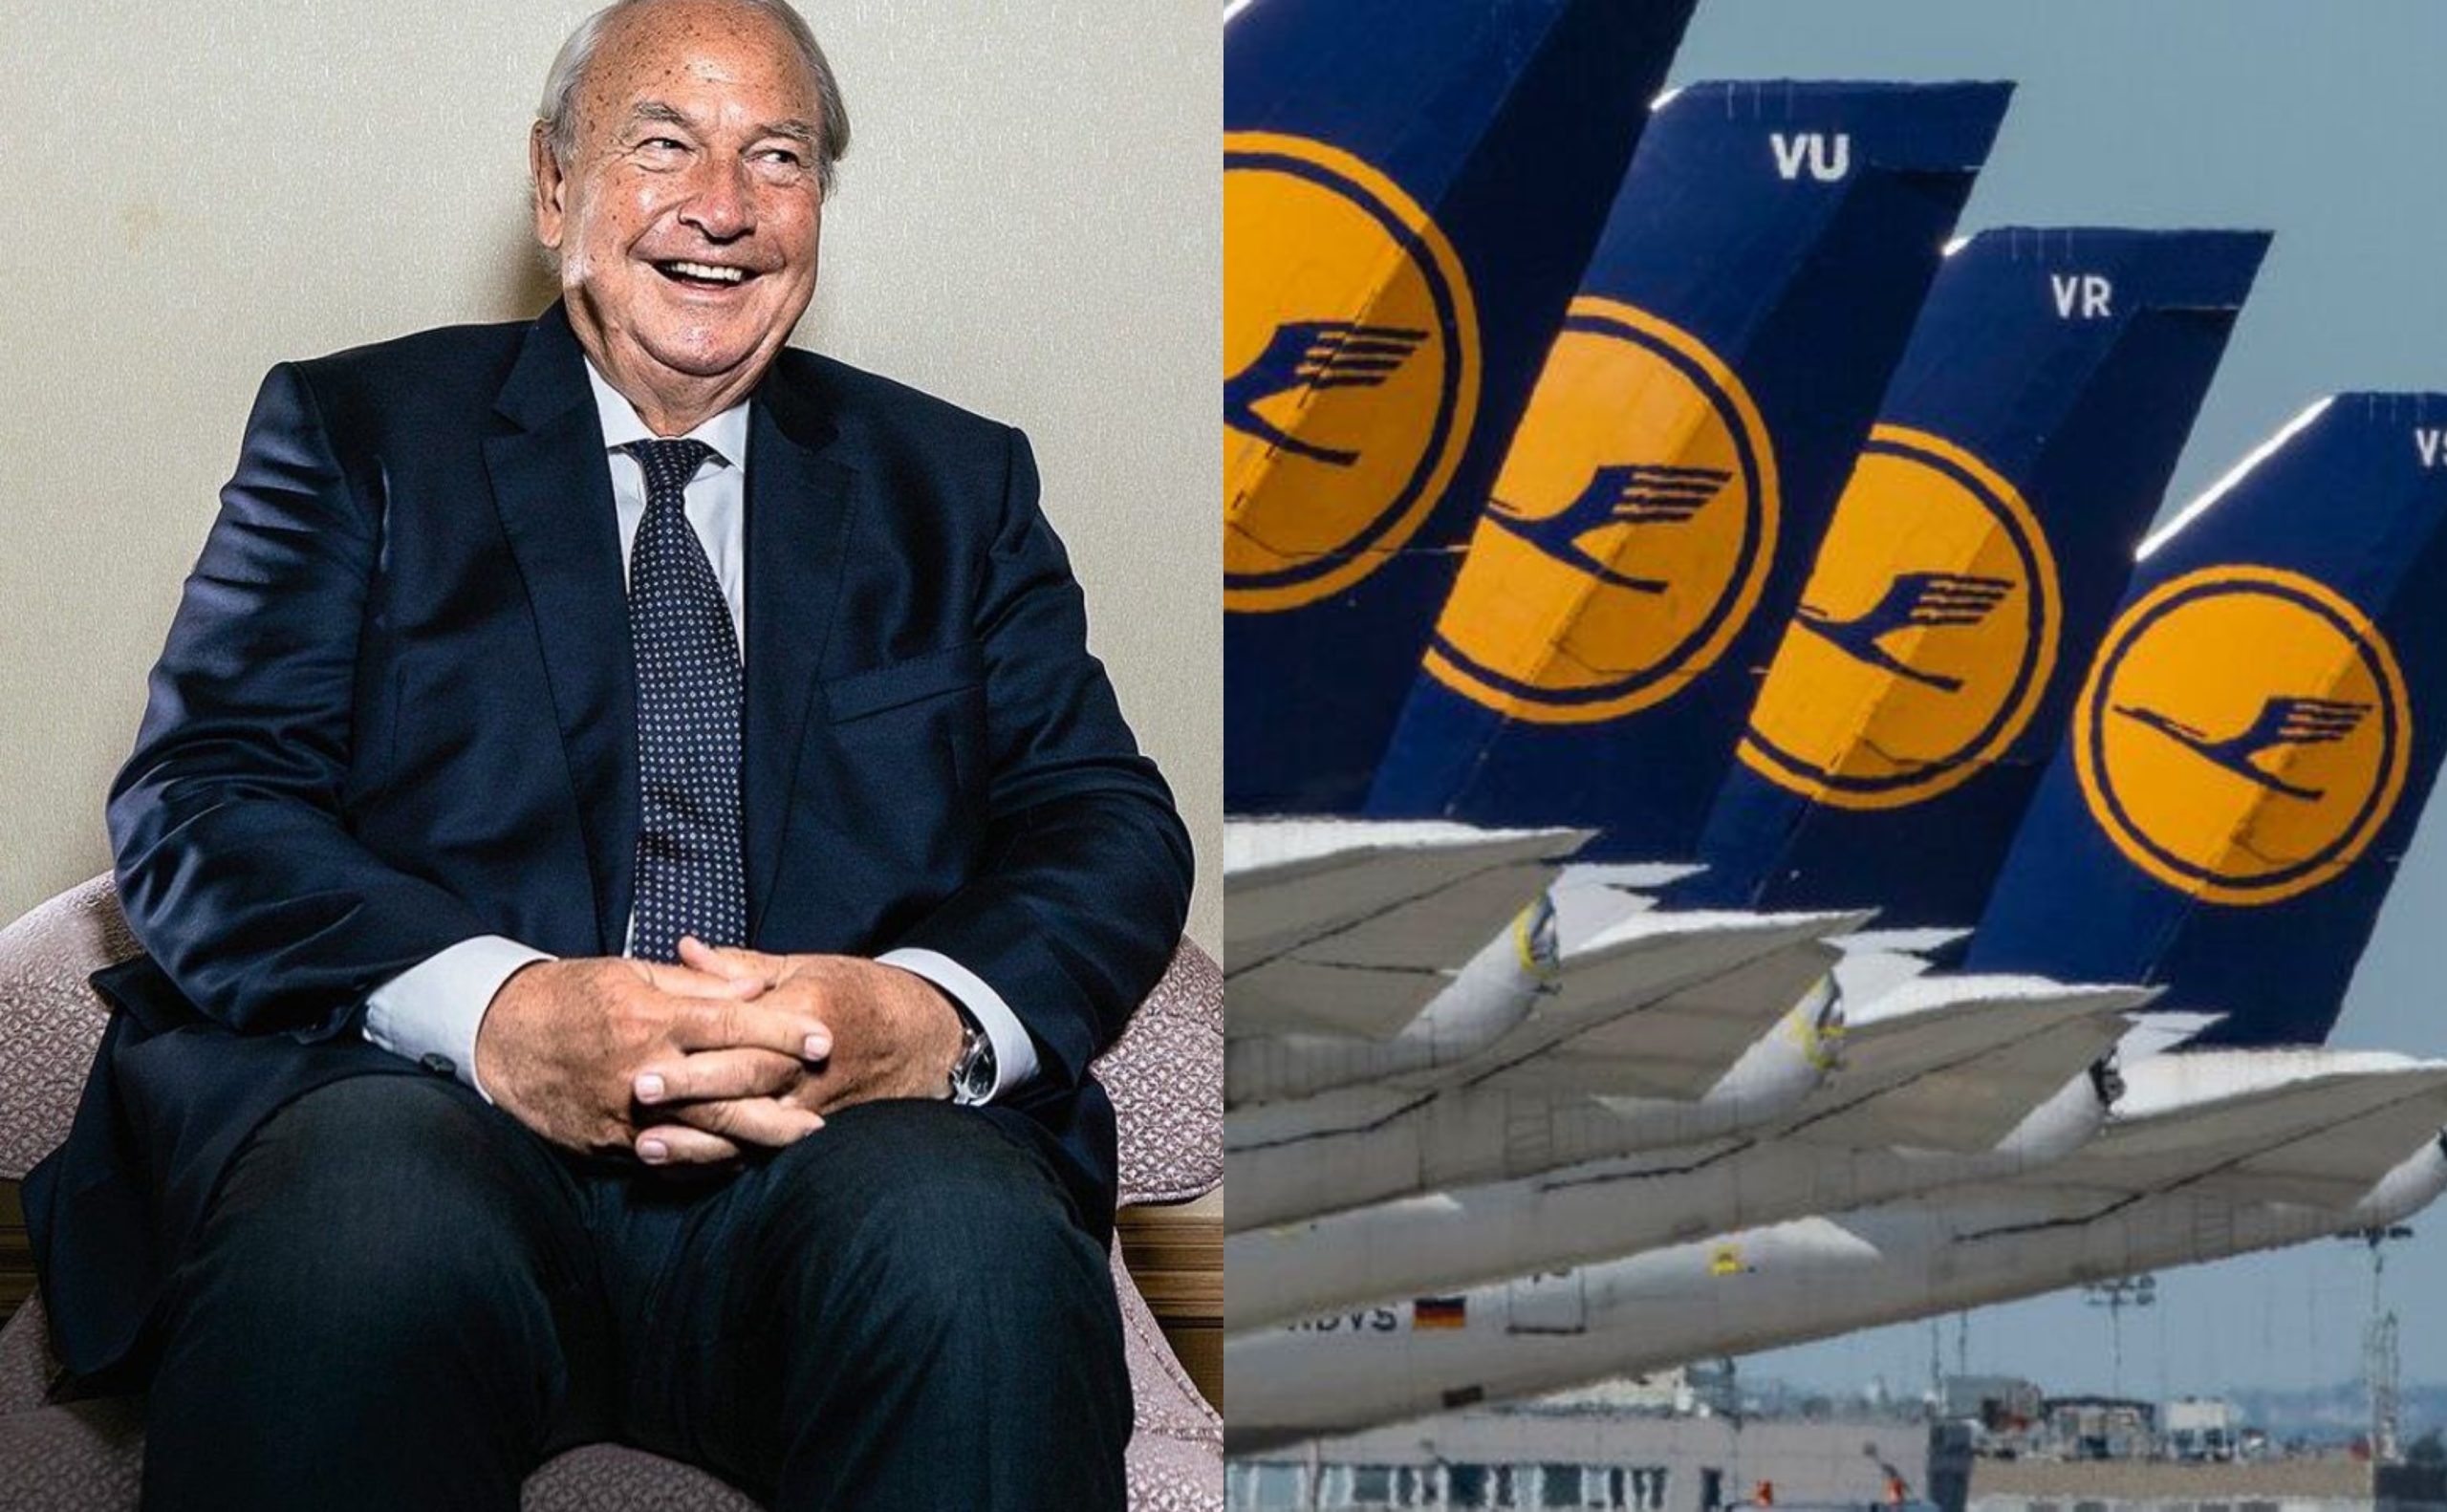 Lufthansa: Massenentlassungen drohen trotz 9 Milliarden Euro Staatshilfen - wie der Staat den Aktionären hilft.